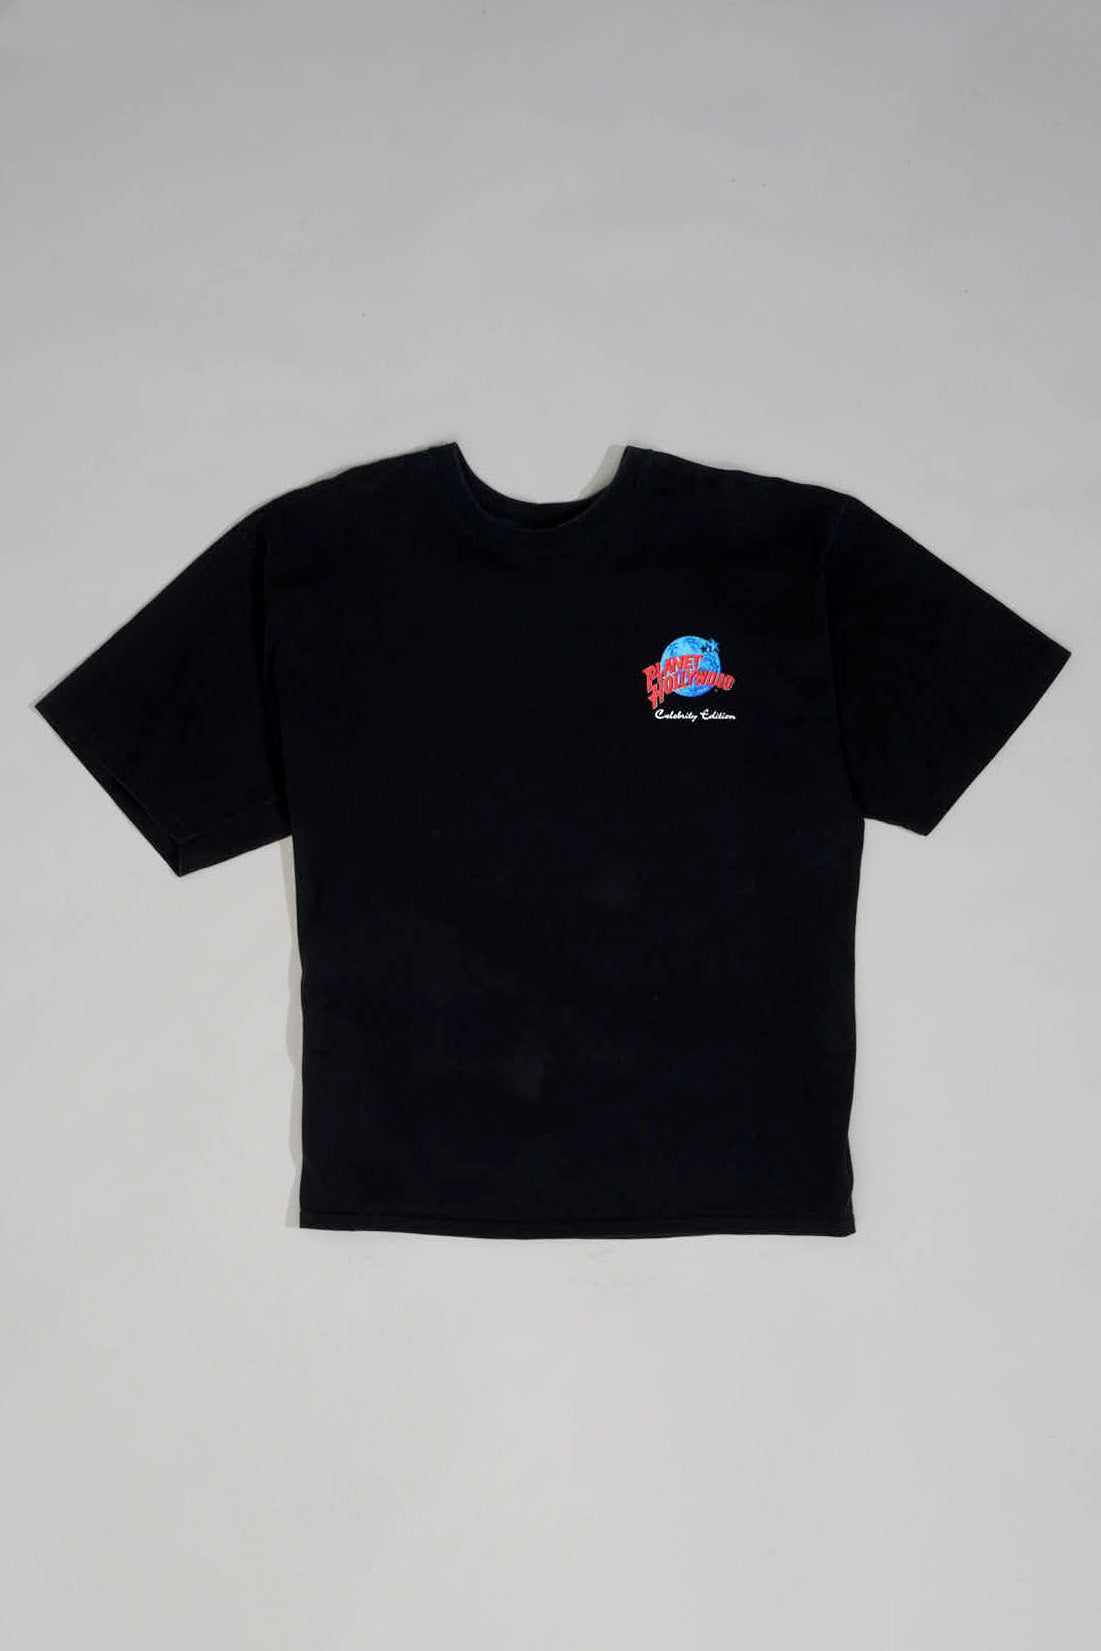 ARNIE PLANET HOLLYWOOD T-Shirt - XL